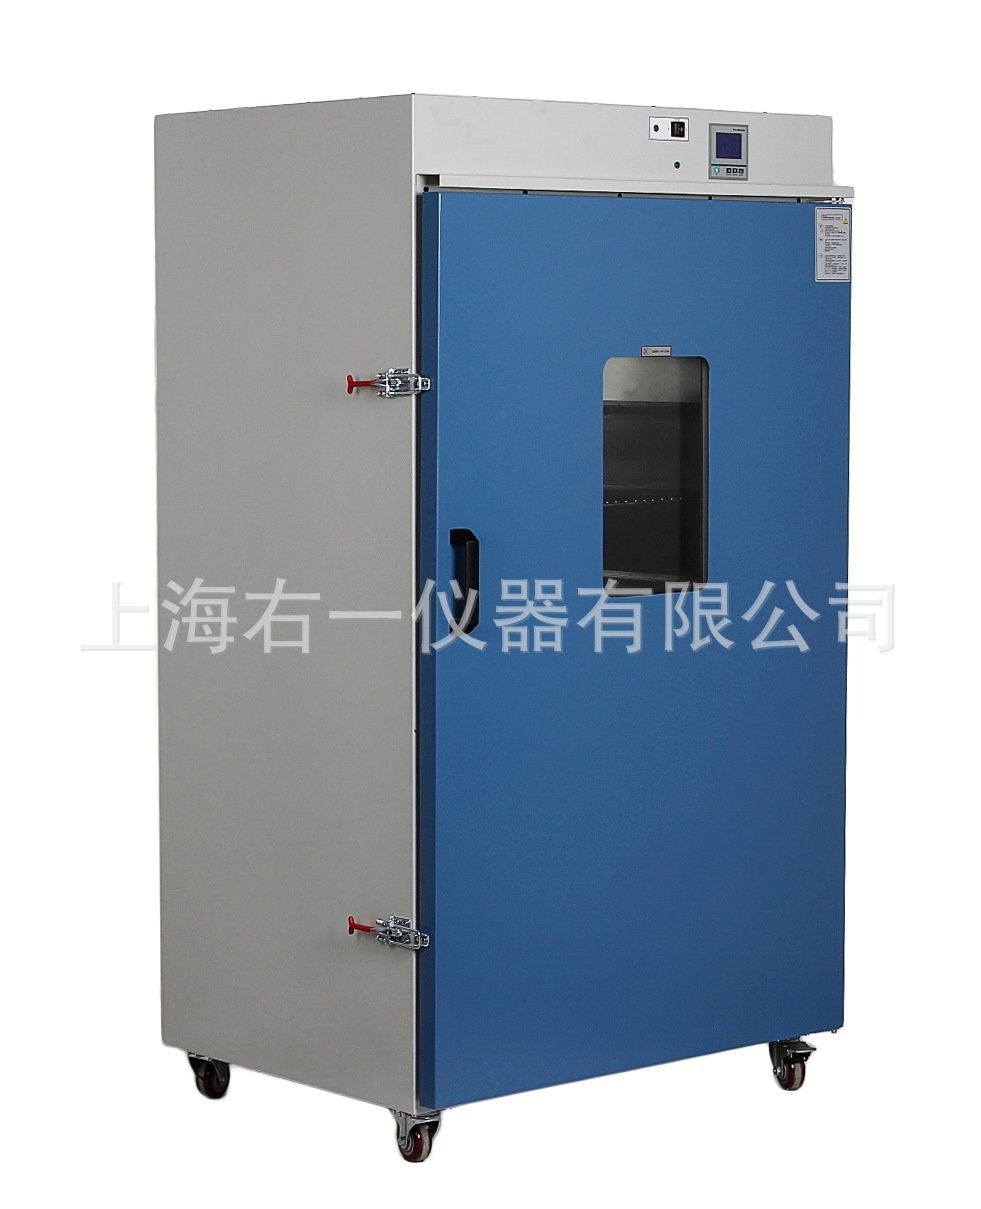 300度420升大容量DHG-9425A立式电热恒温鼓风干燥箱的图片